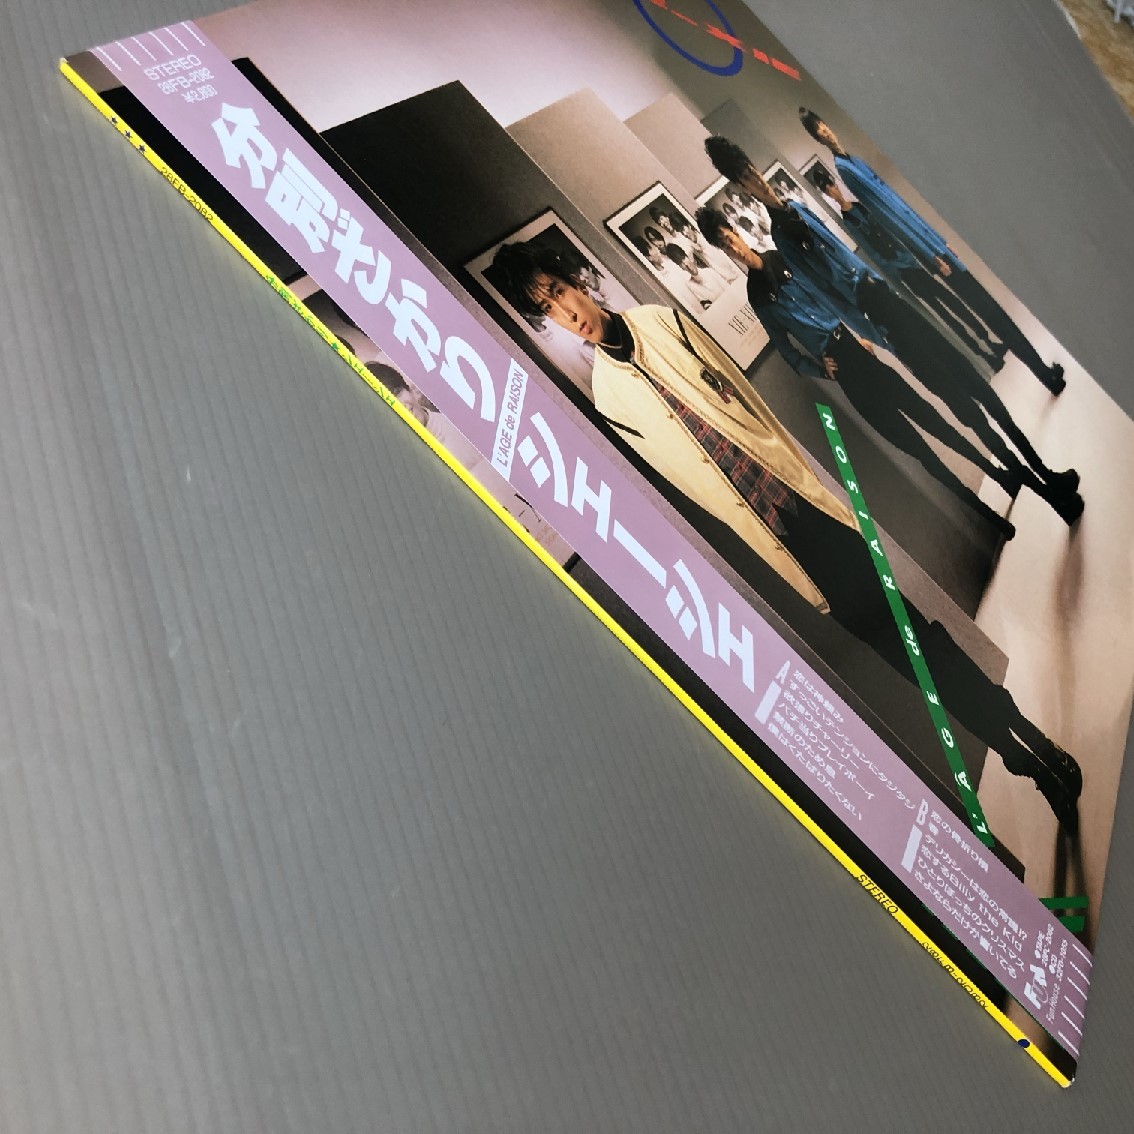 傷なし美盤 レア盤 シェーシェ Xie-Xie 1987年 LPレコード 分別ざかり L'AGE de RAISON 国内盤 オリジナルリリース盤 帯付 J-Pop_画像4